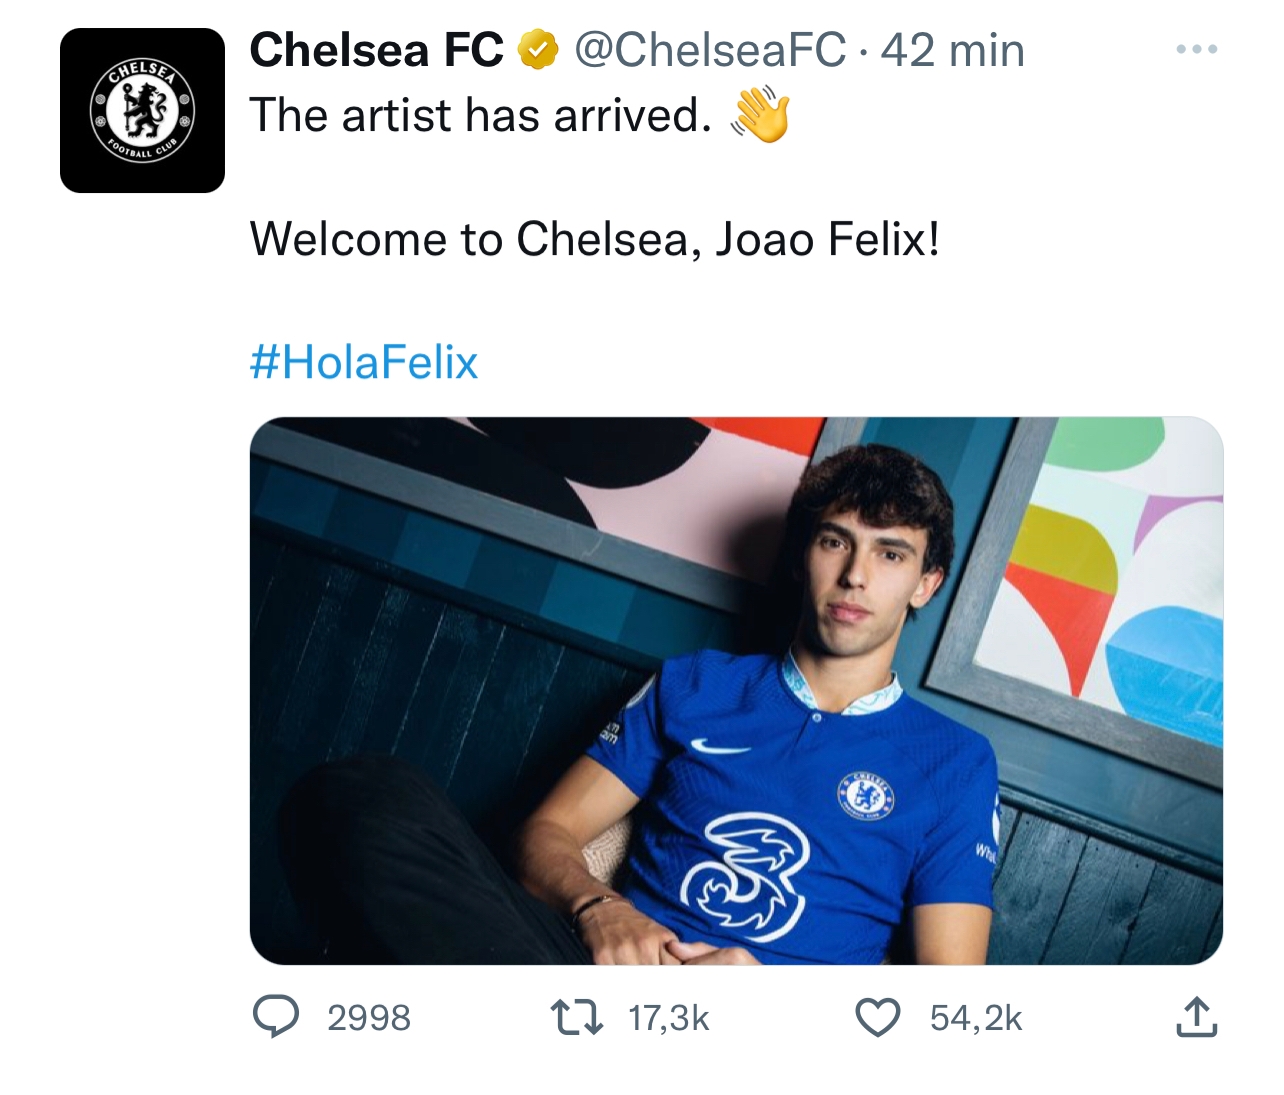 El Chelsea comete una metedura de pata al anunciar a João Félix: "hola" en vez de "hello"